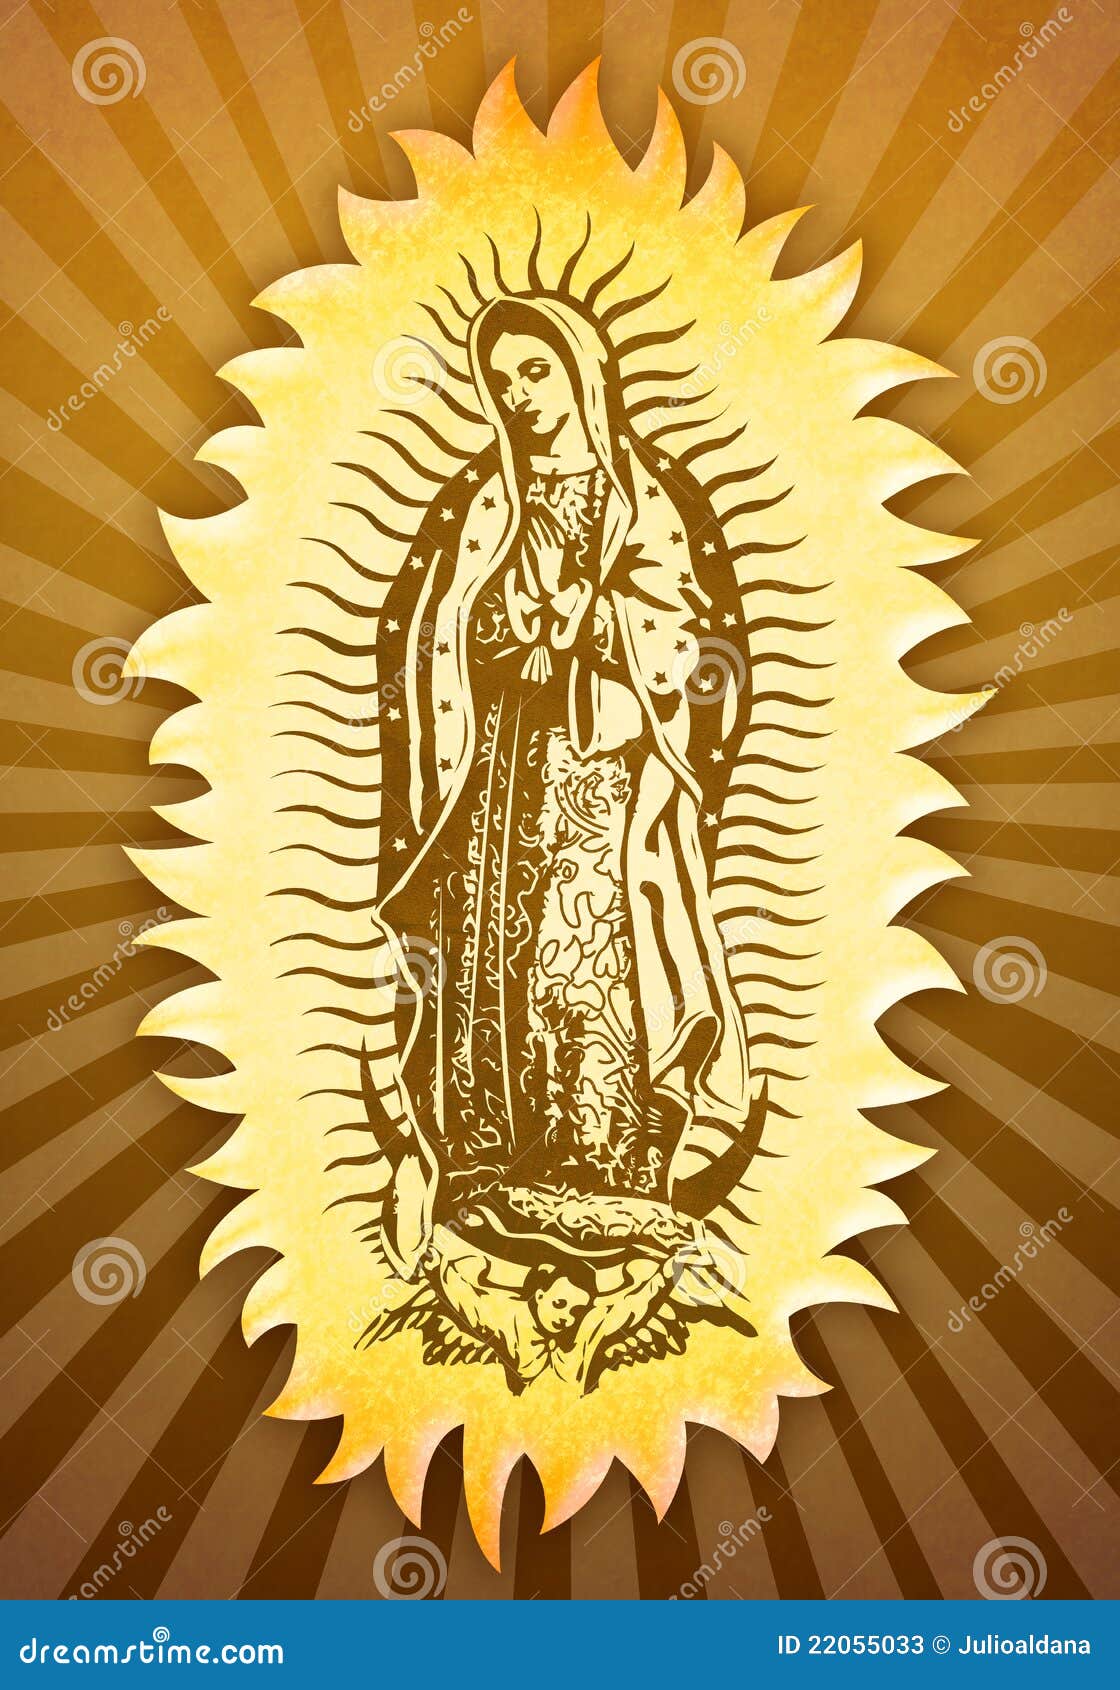 Mexican Virgin Mary Art